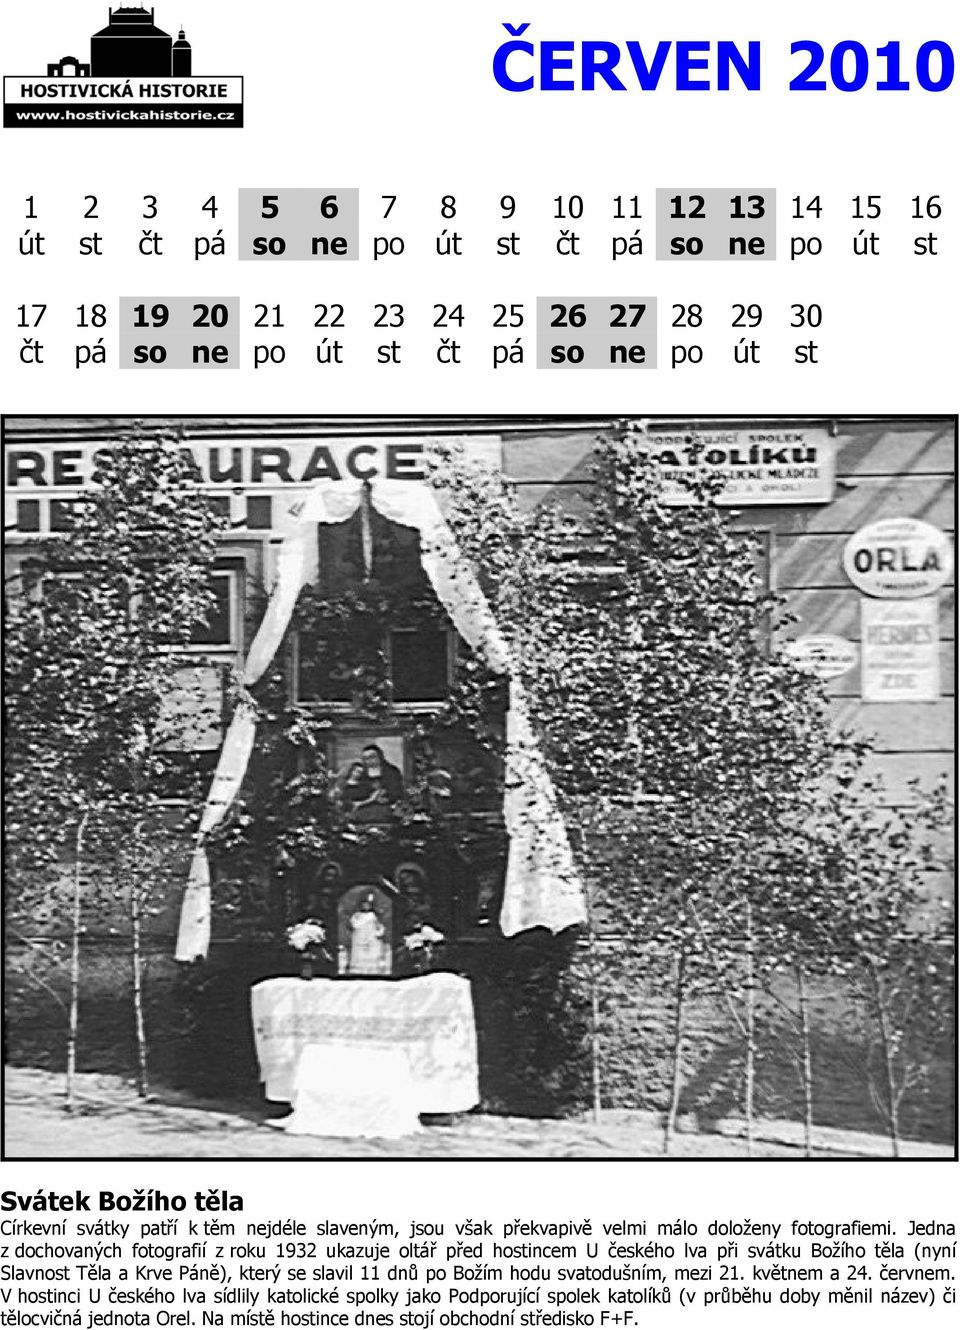 Jedna z dochovaných fotografií z roku 1932 ukazuje oltář před hostincem U českého lva při svátku Božího těla (nyní Slavnost Těla a Krve Páně), který se slavil 11 dnů po